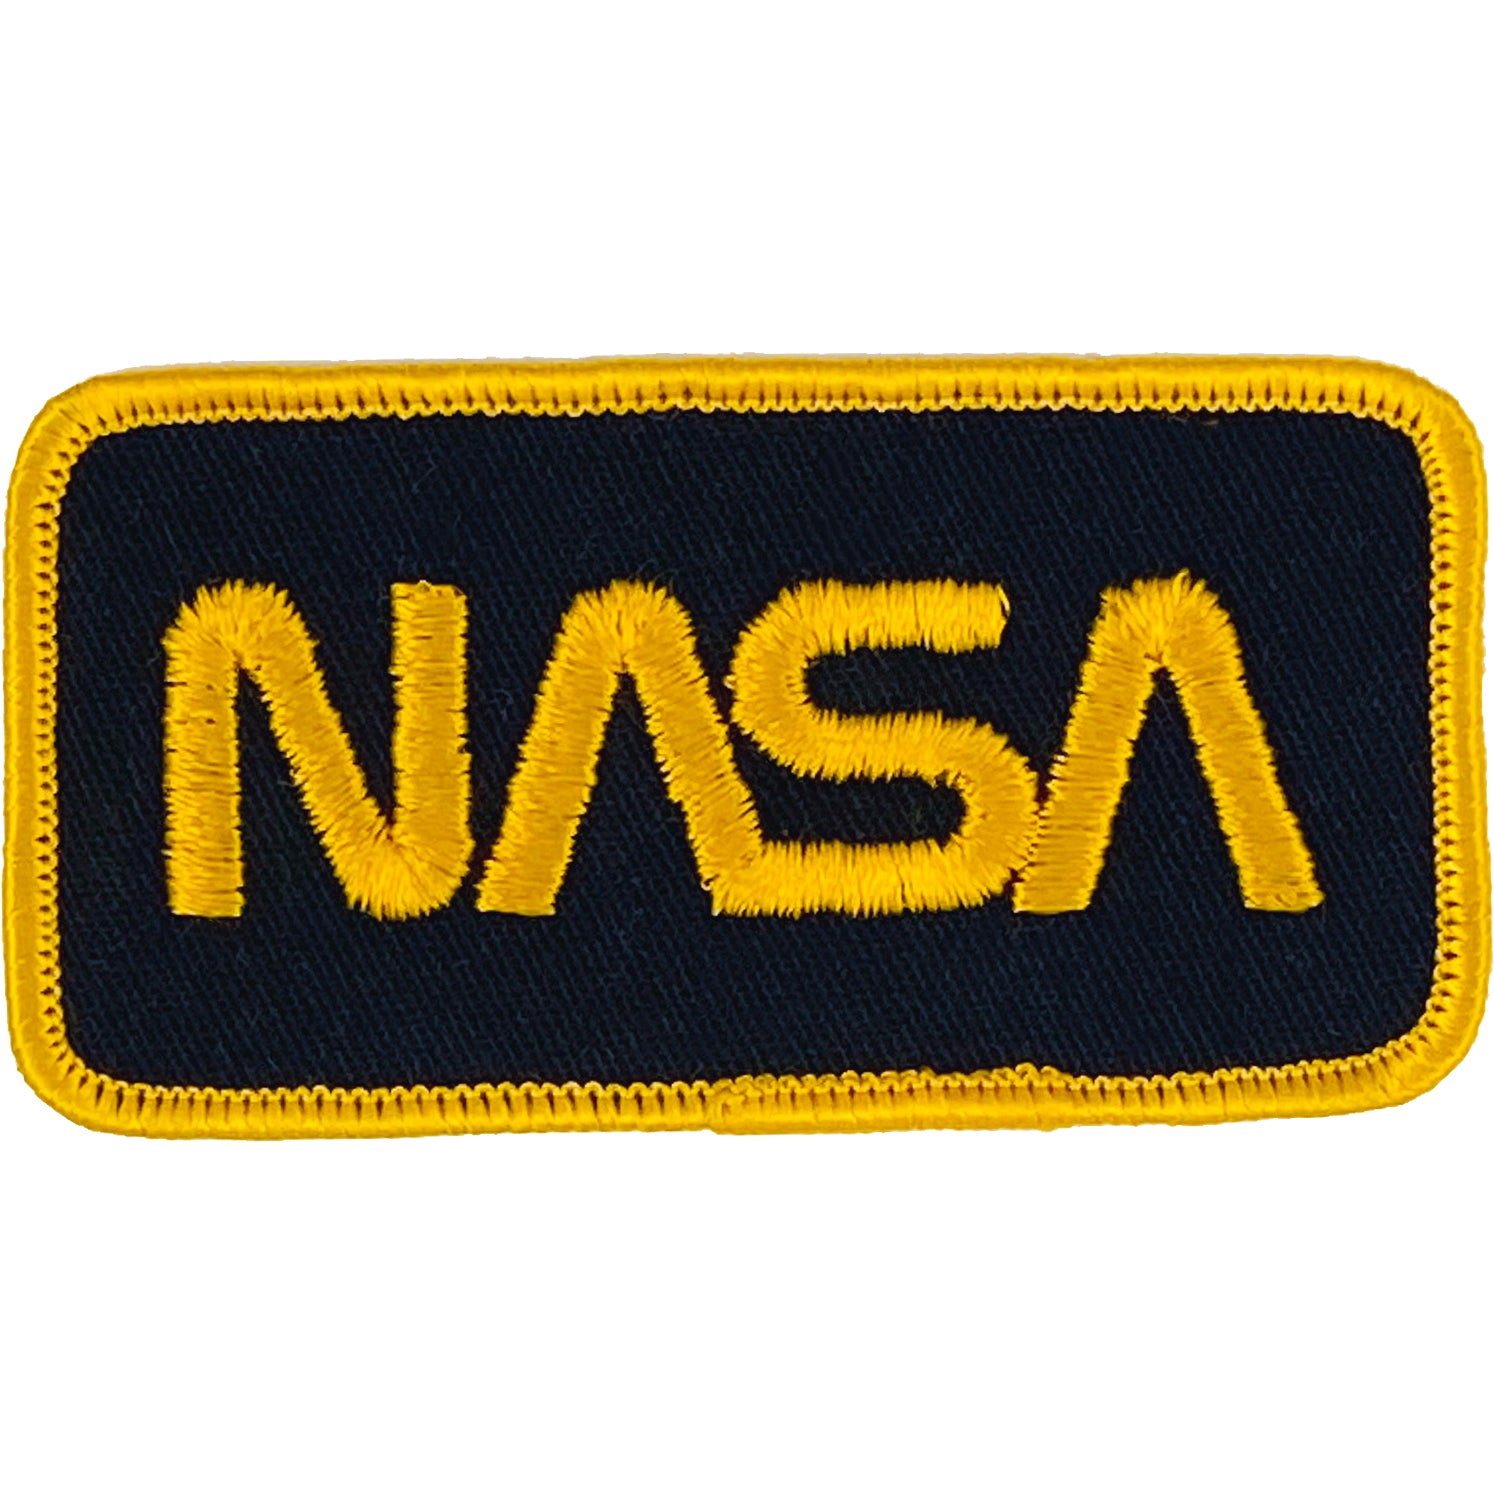 VINTAGE NASA PATCH